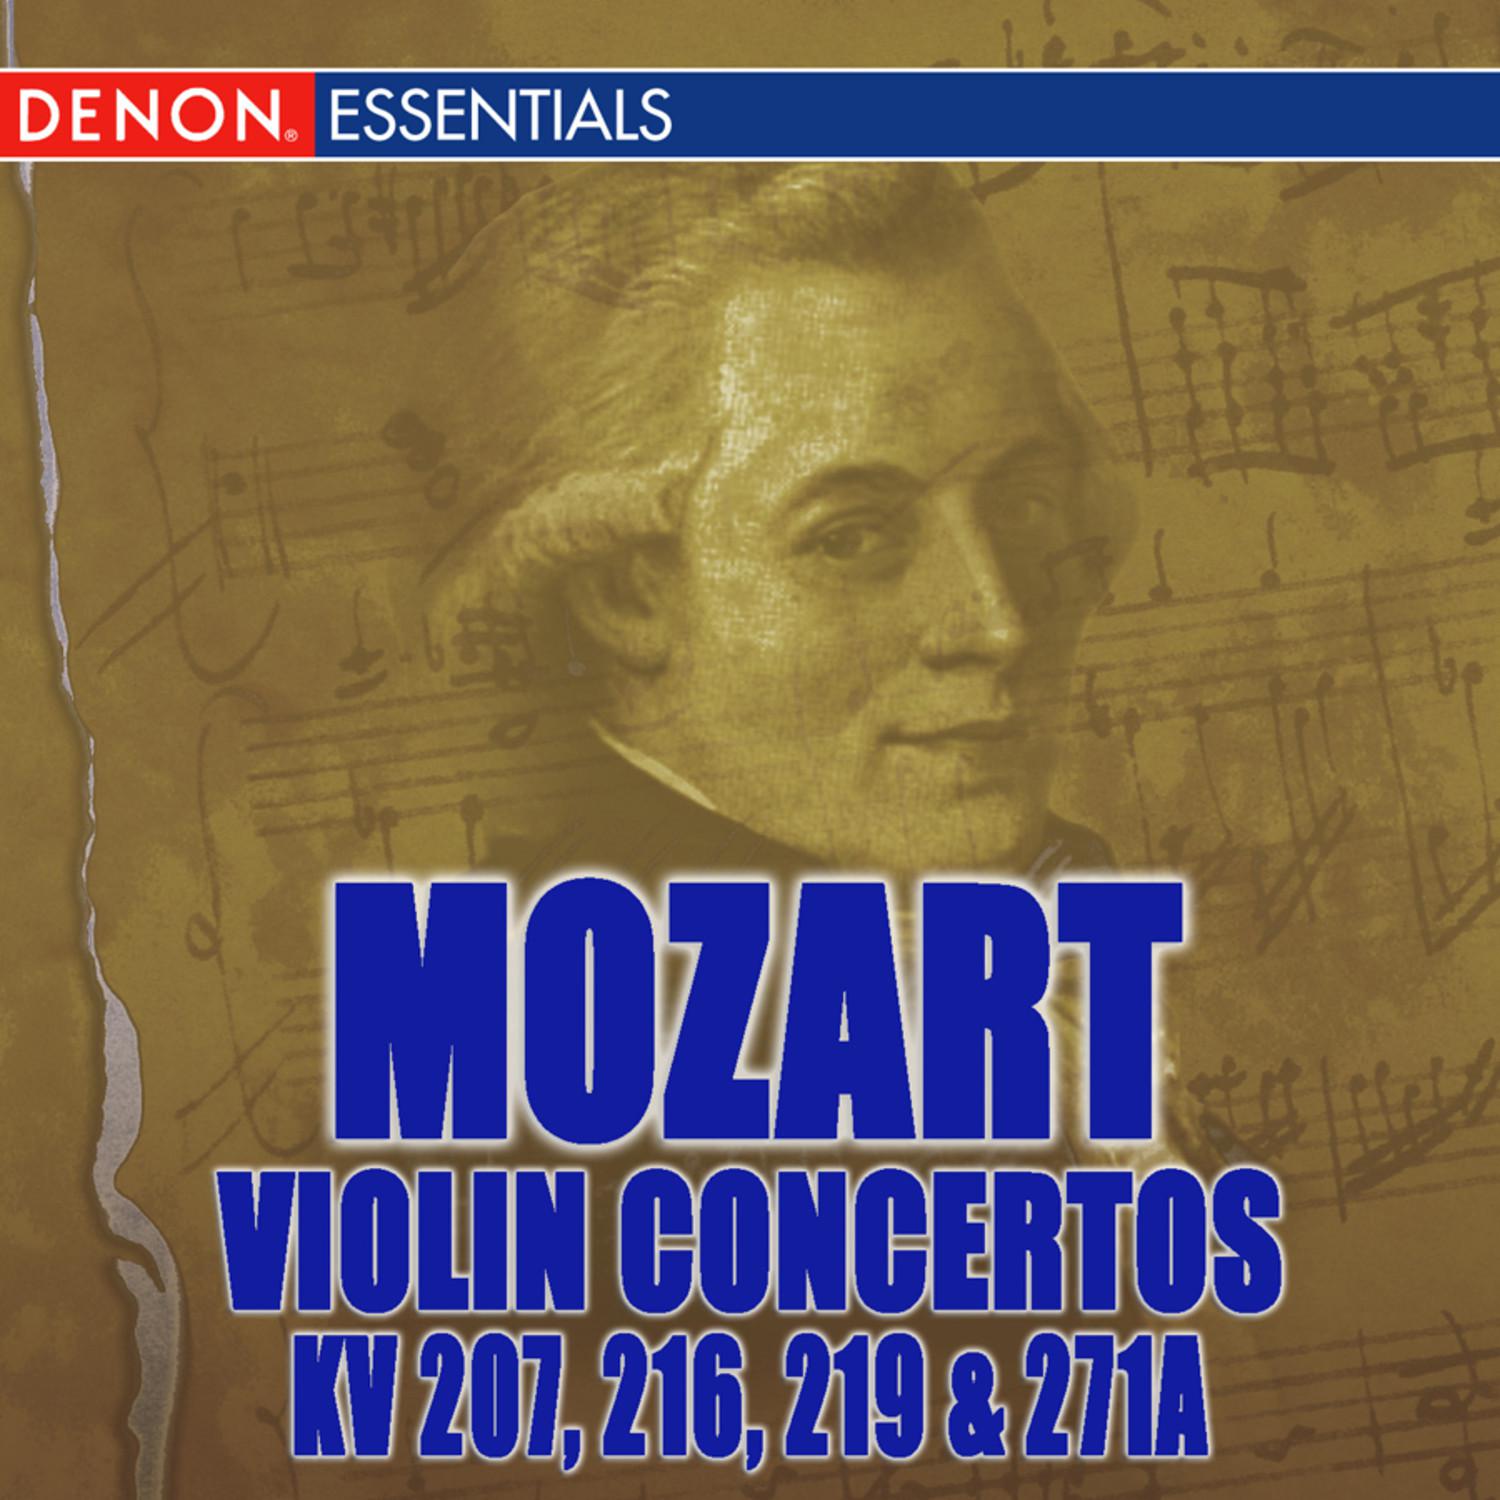 Violin Concerto No. 7 in D major, K. 271a: Allegro maestoso